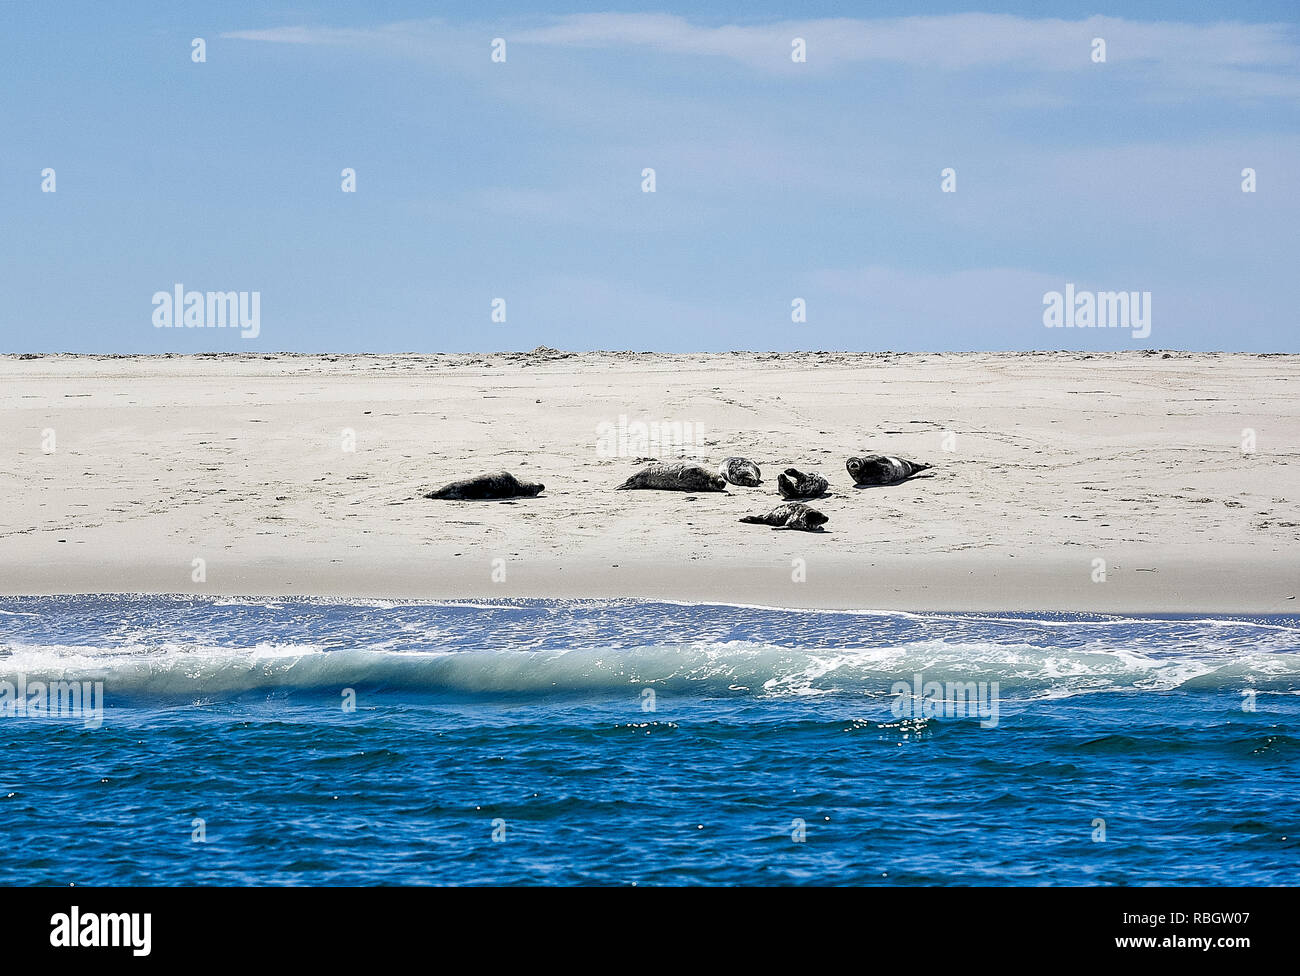 Sunbathing seals, Monomoy National Wildlife Refuge, Chatham, Cape Cod, Massachusetts, USA. Stock Photo